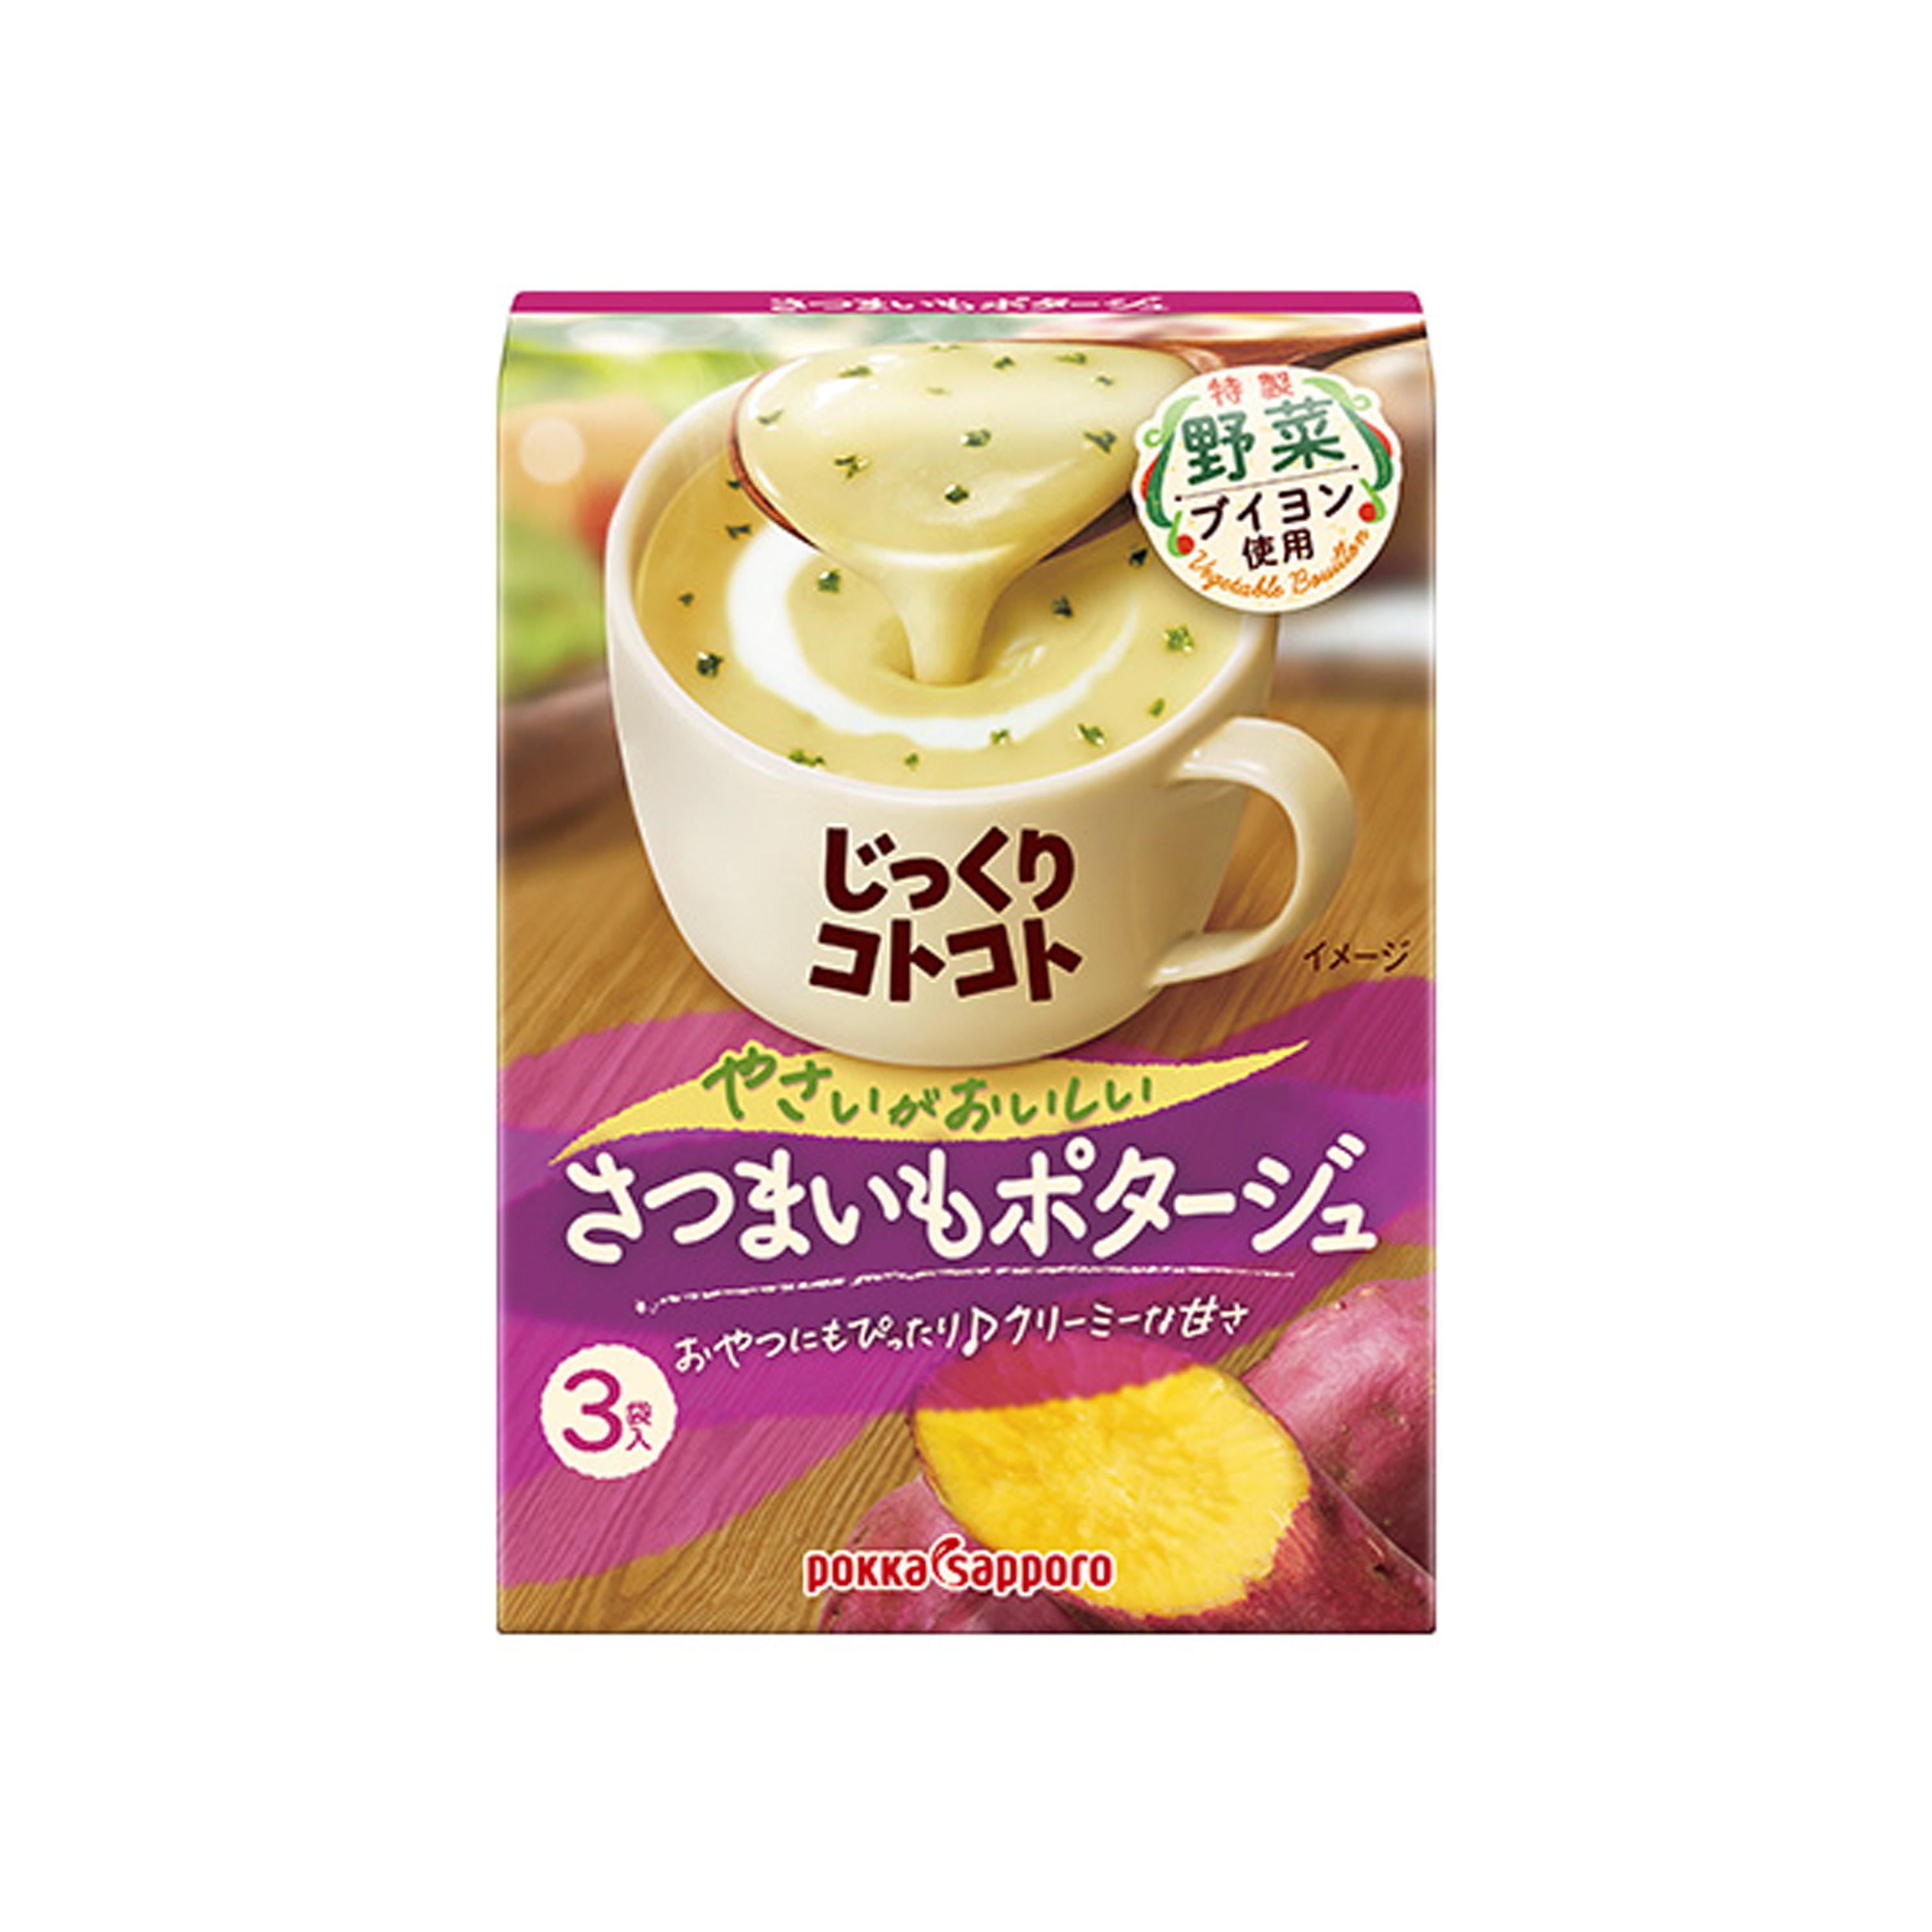 pokka-sapporo-sweet-potato-soup